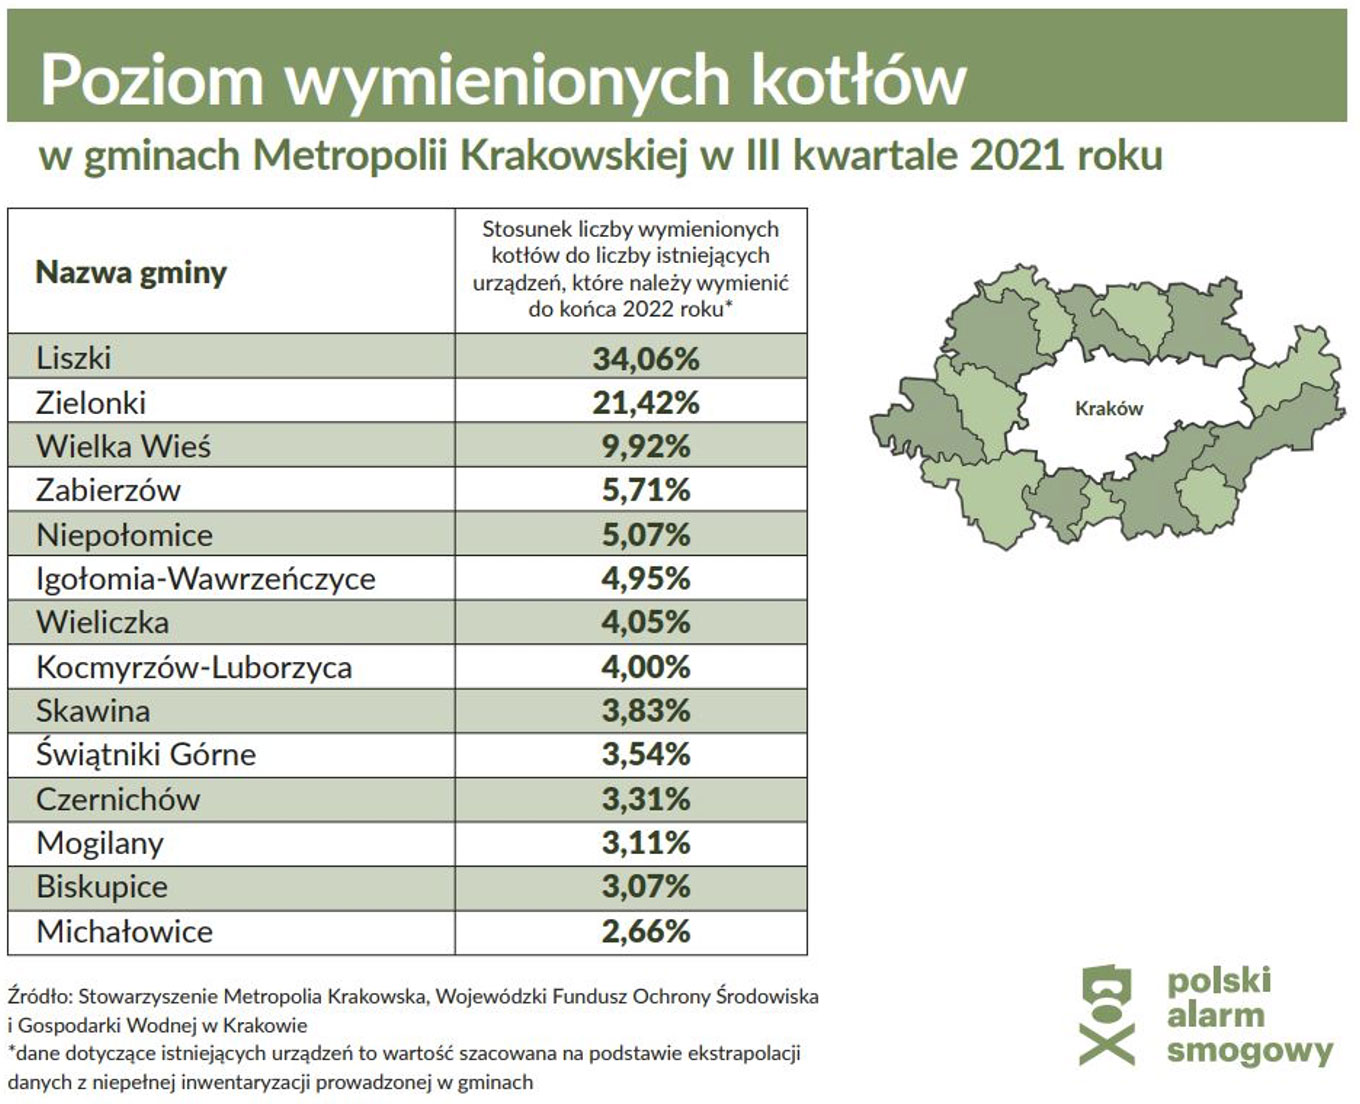 Poziom wymienionych kotłów w gminach Metropolii Krakowskiej w III kwartale 2021 roku